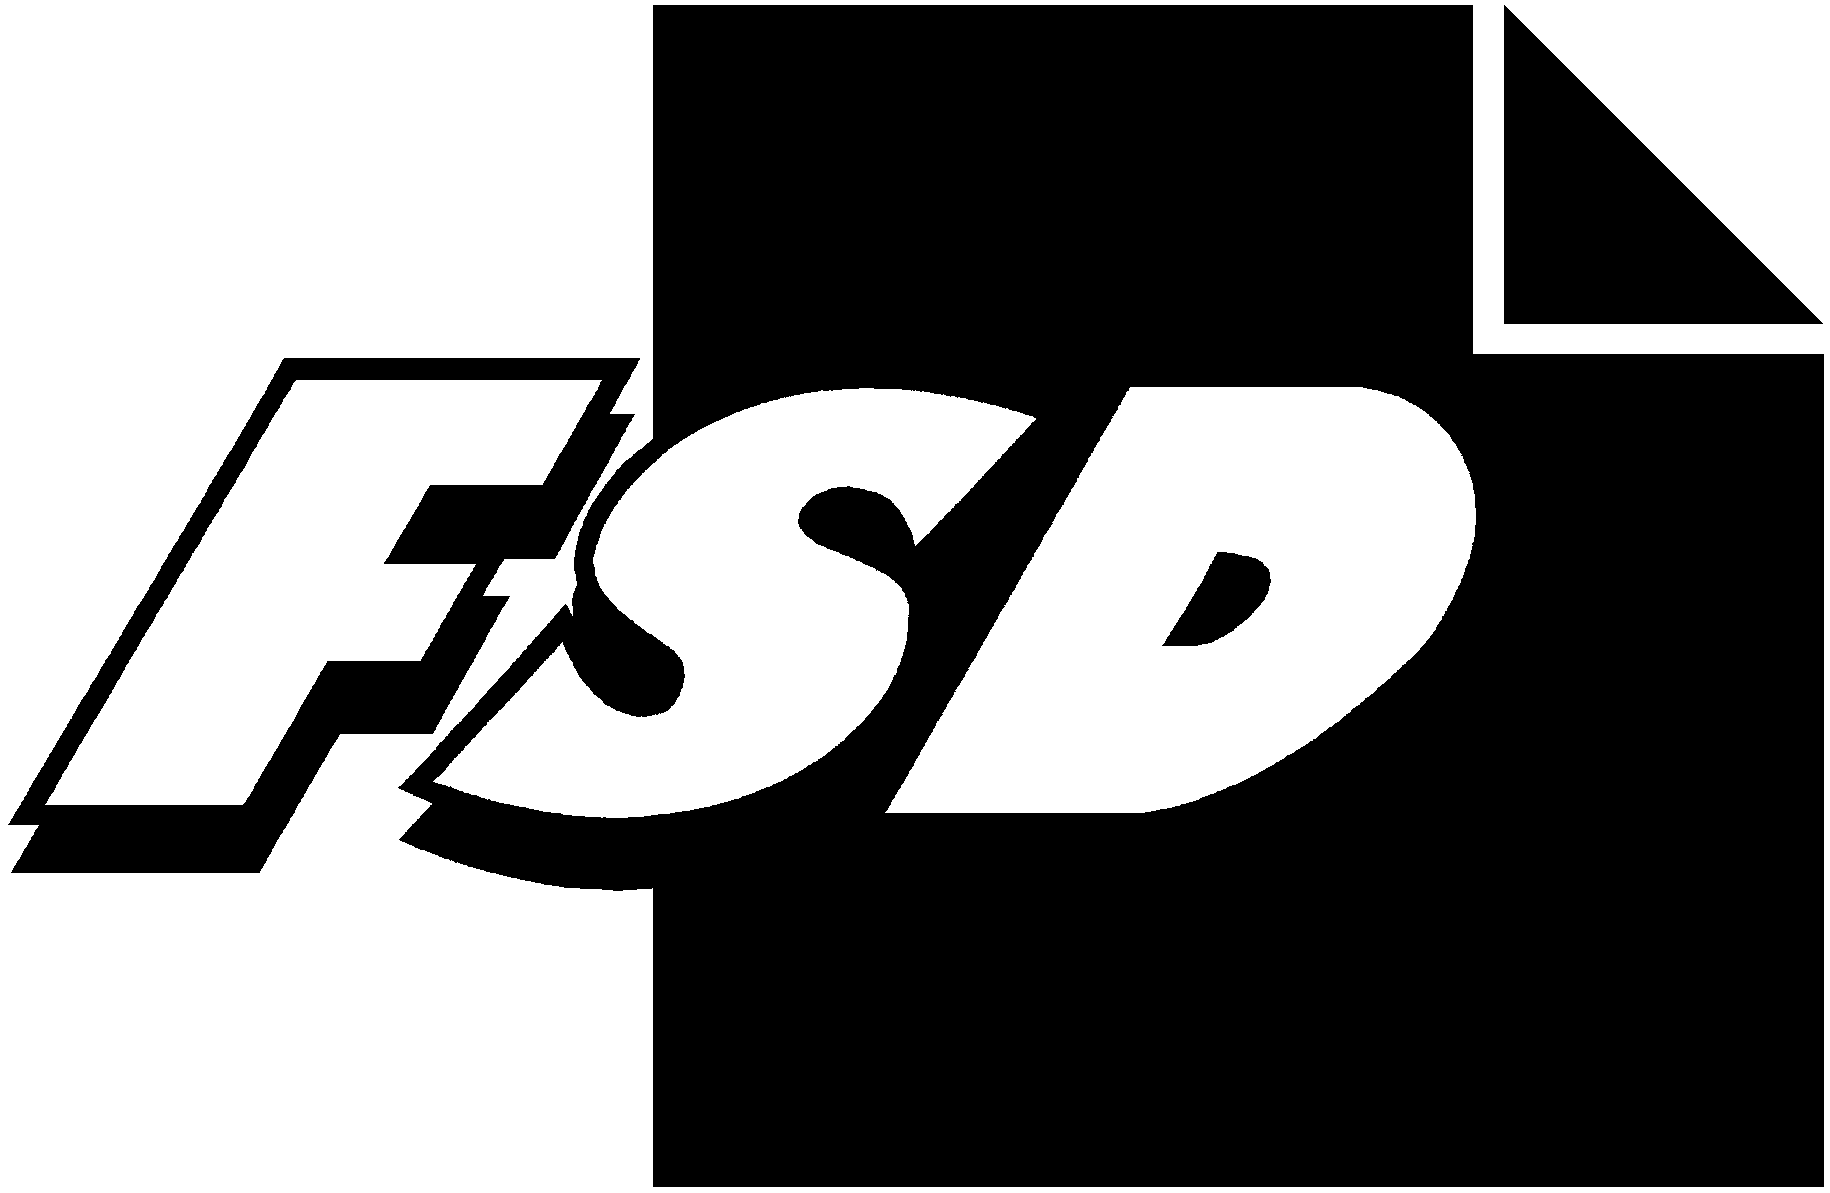 FSD2498 Kansallisen innovaatiojärjestelmän arviointi